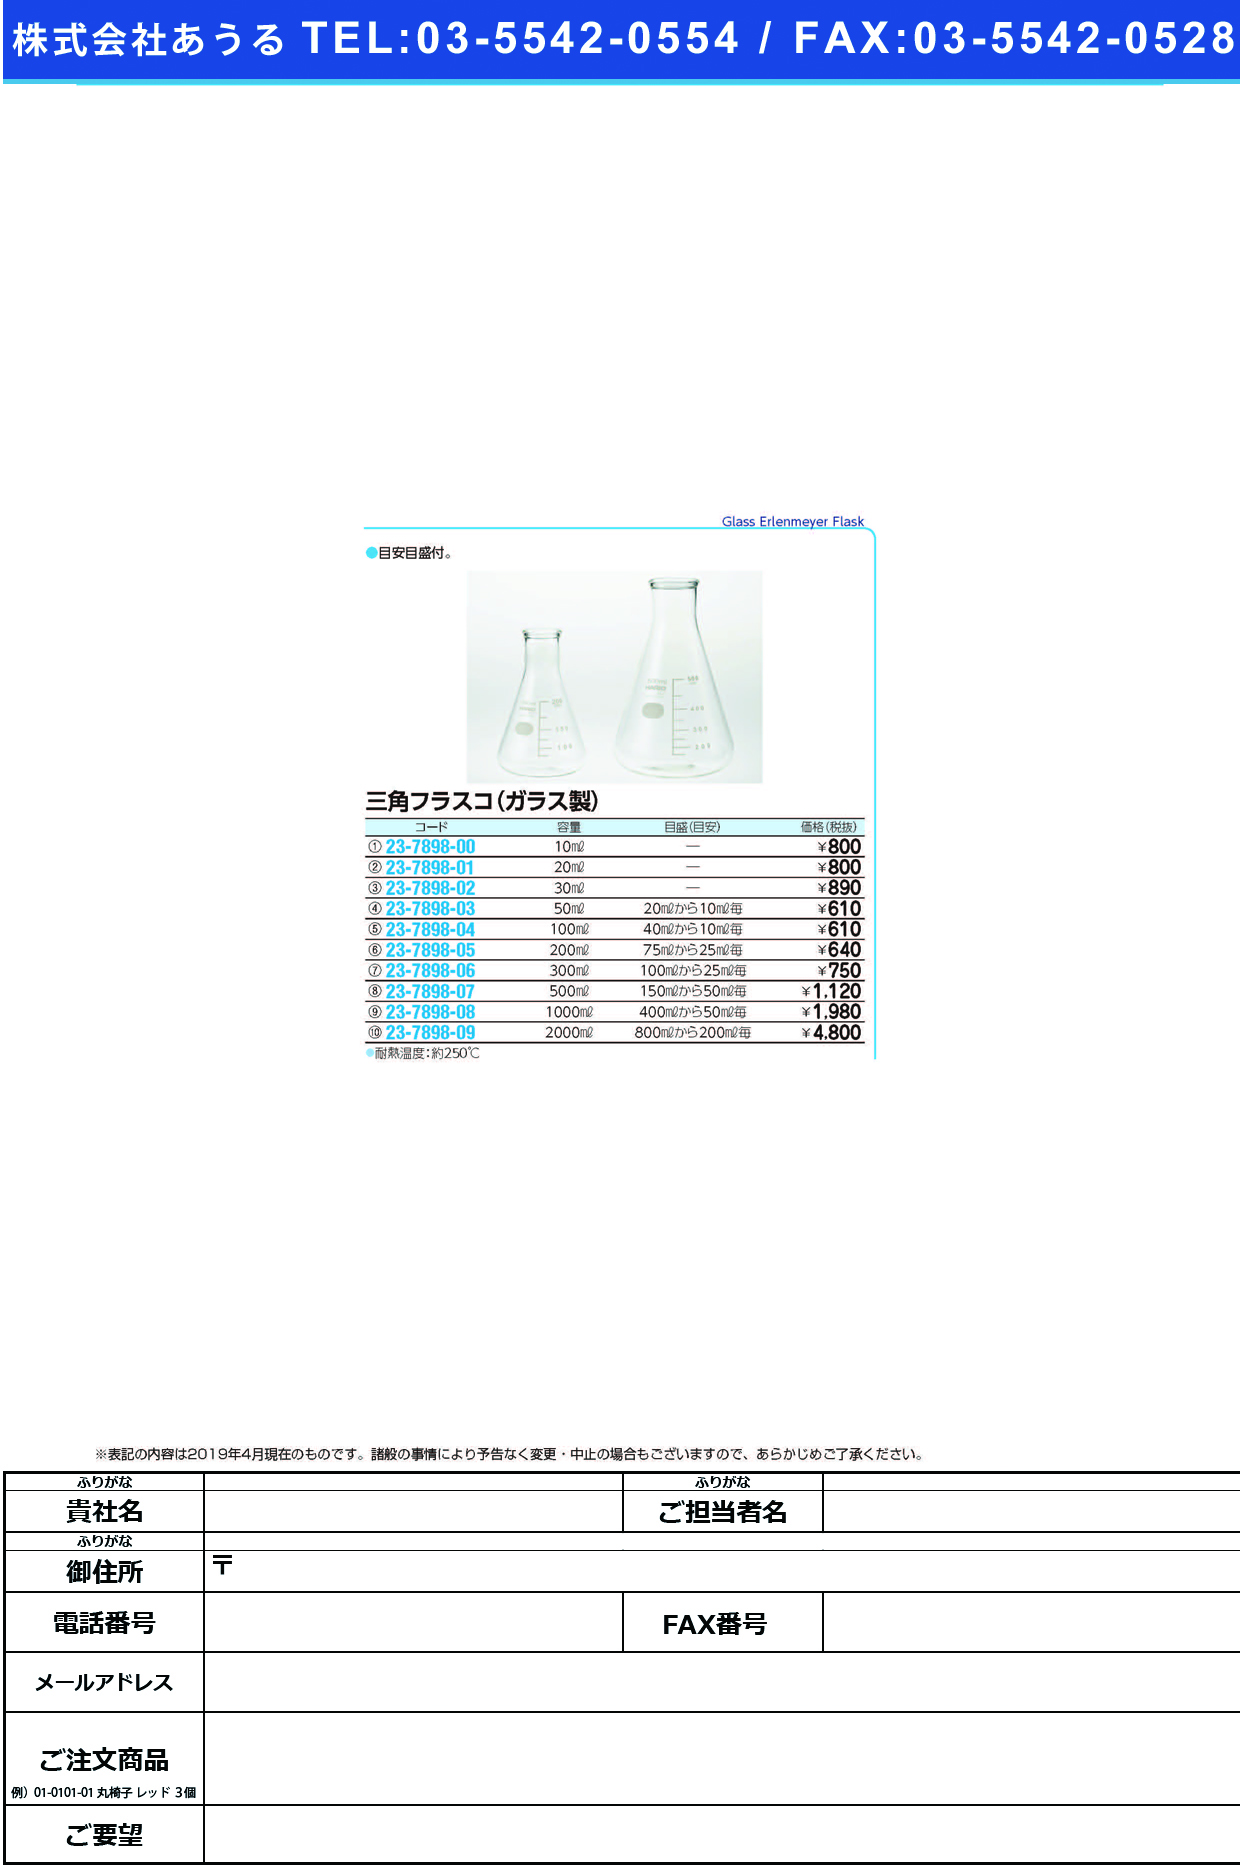 (23-7898-08)三角フラスコ（ガラス製） 1000ML ｻﾝｶｸﾌﾗｽｺ(ｶﾞﾗｽｾｲ)【1個単位】【2019年カタログ商品】